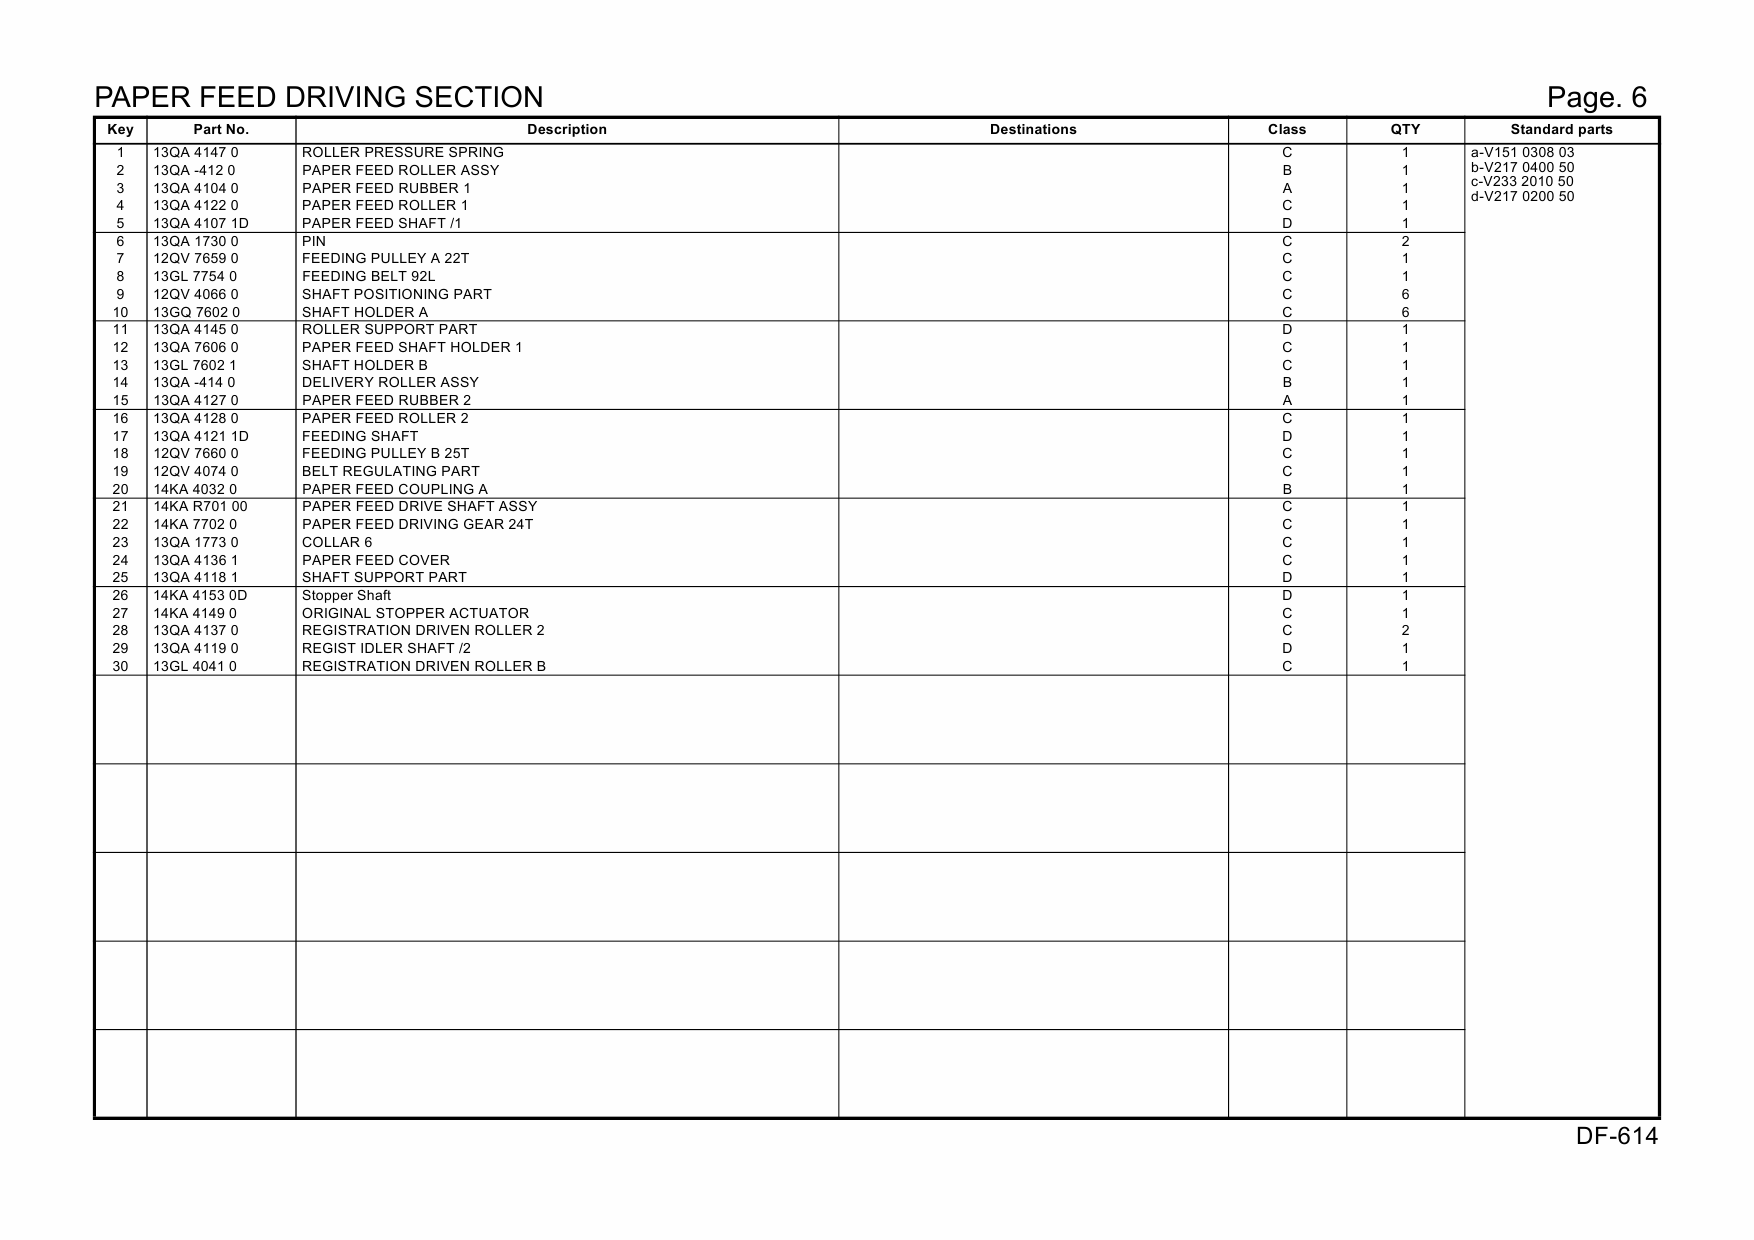 Konica-Minolta Options DF-614 A0R4 Parts Manual-6